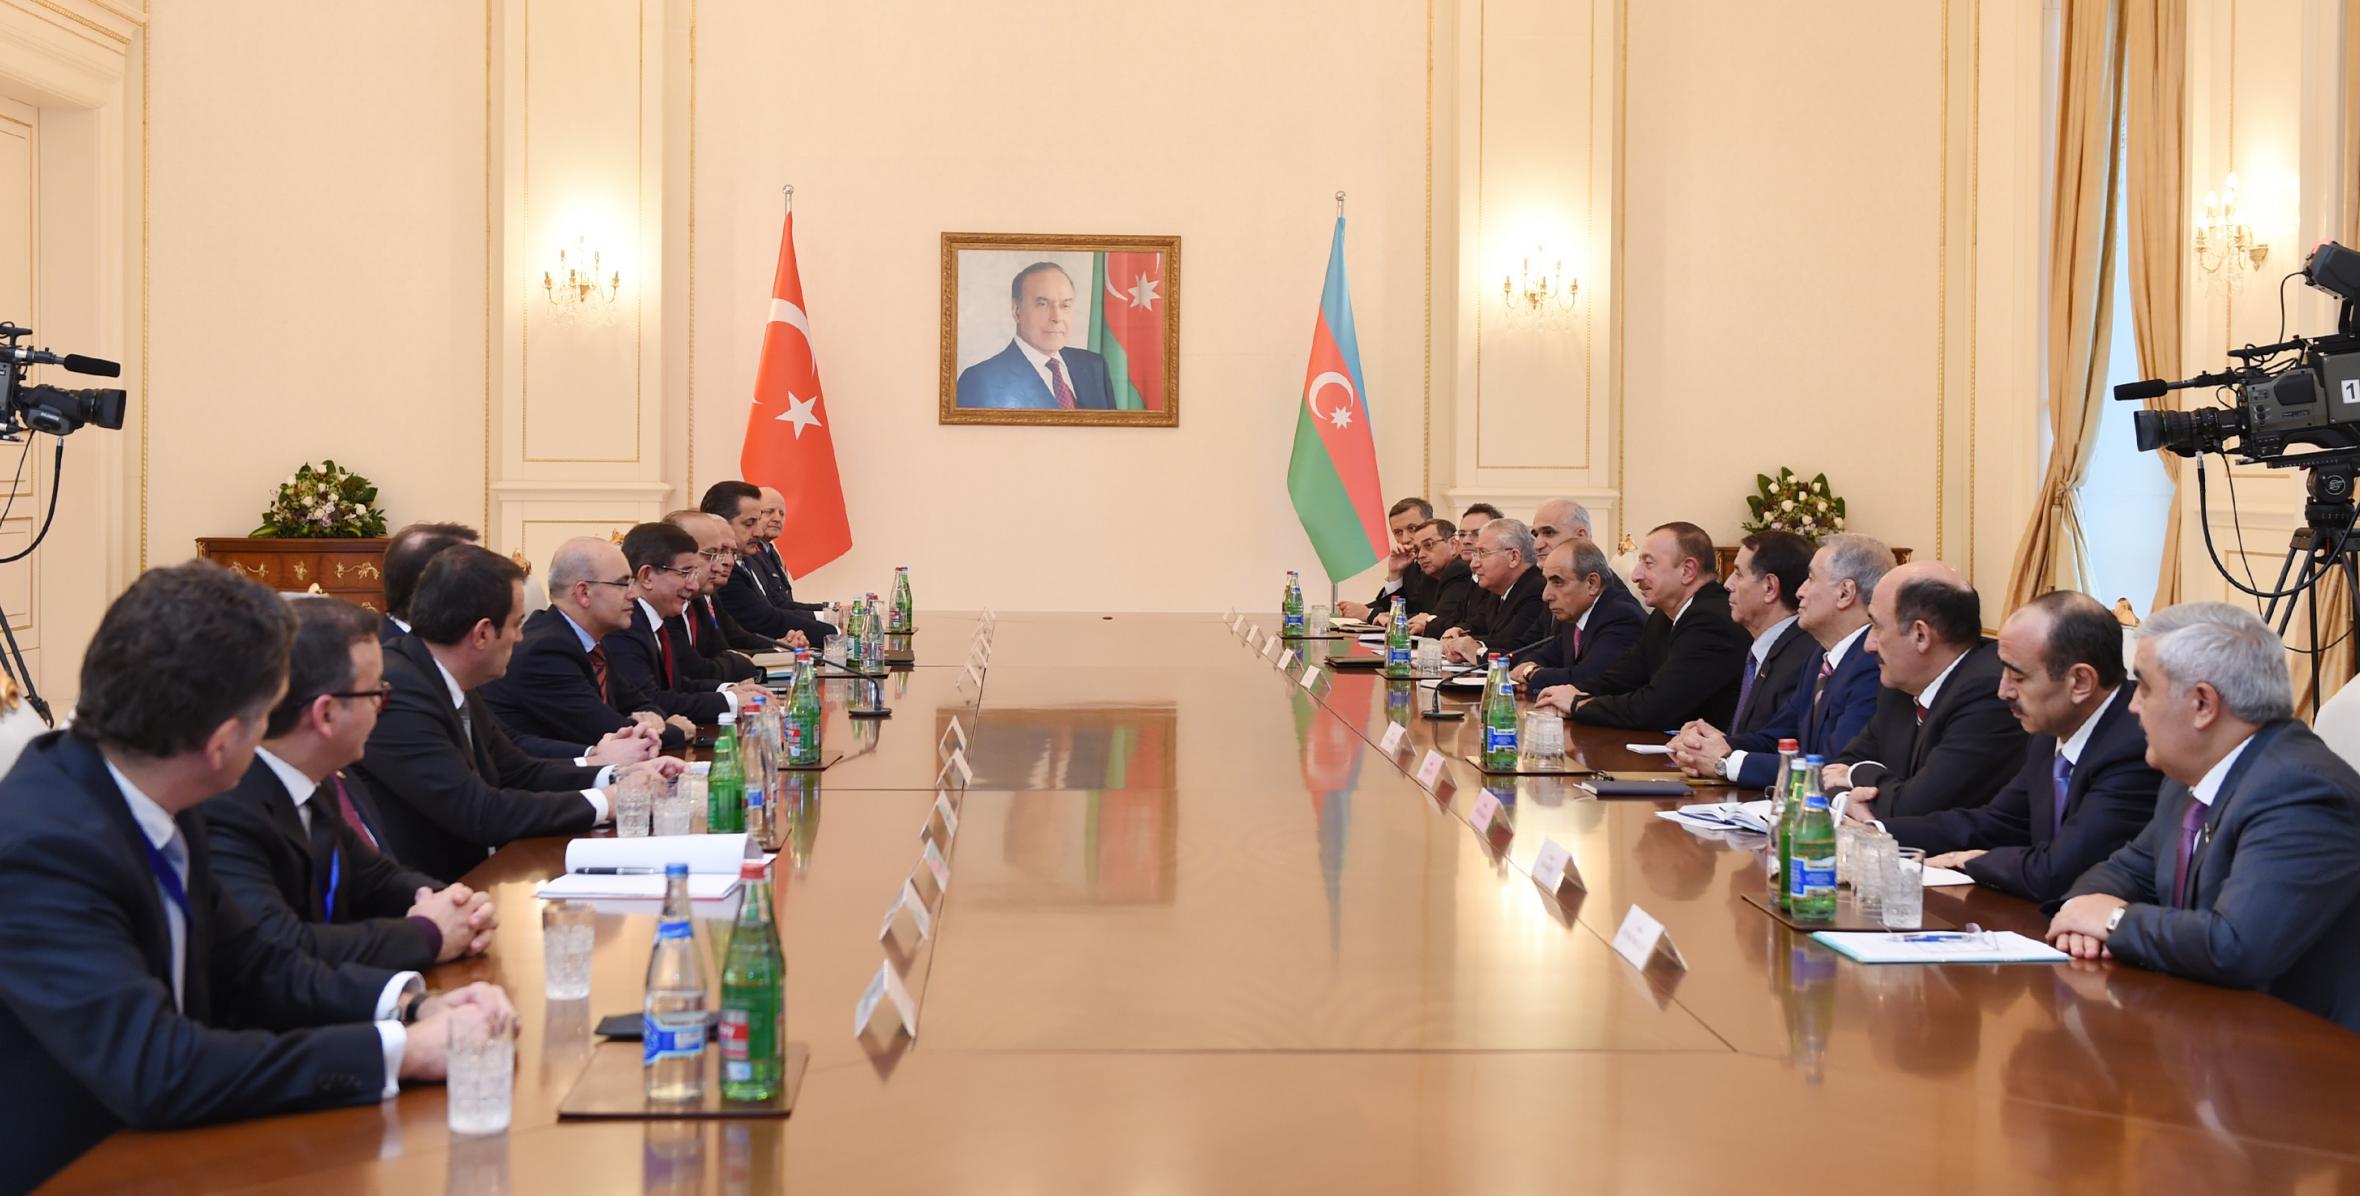 Состоялась встреча Ильхама Алиева и премьер-министра Турецкой Республики Ахмета Давутоглу в расширенном составе